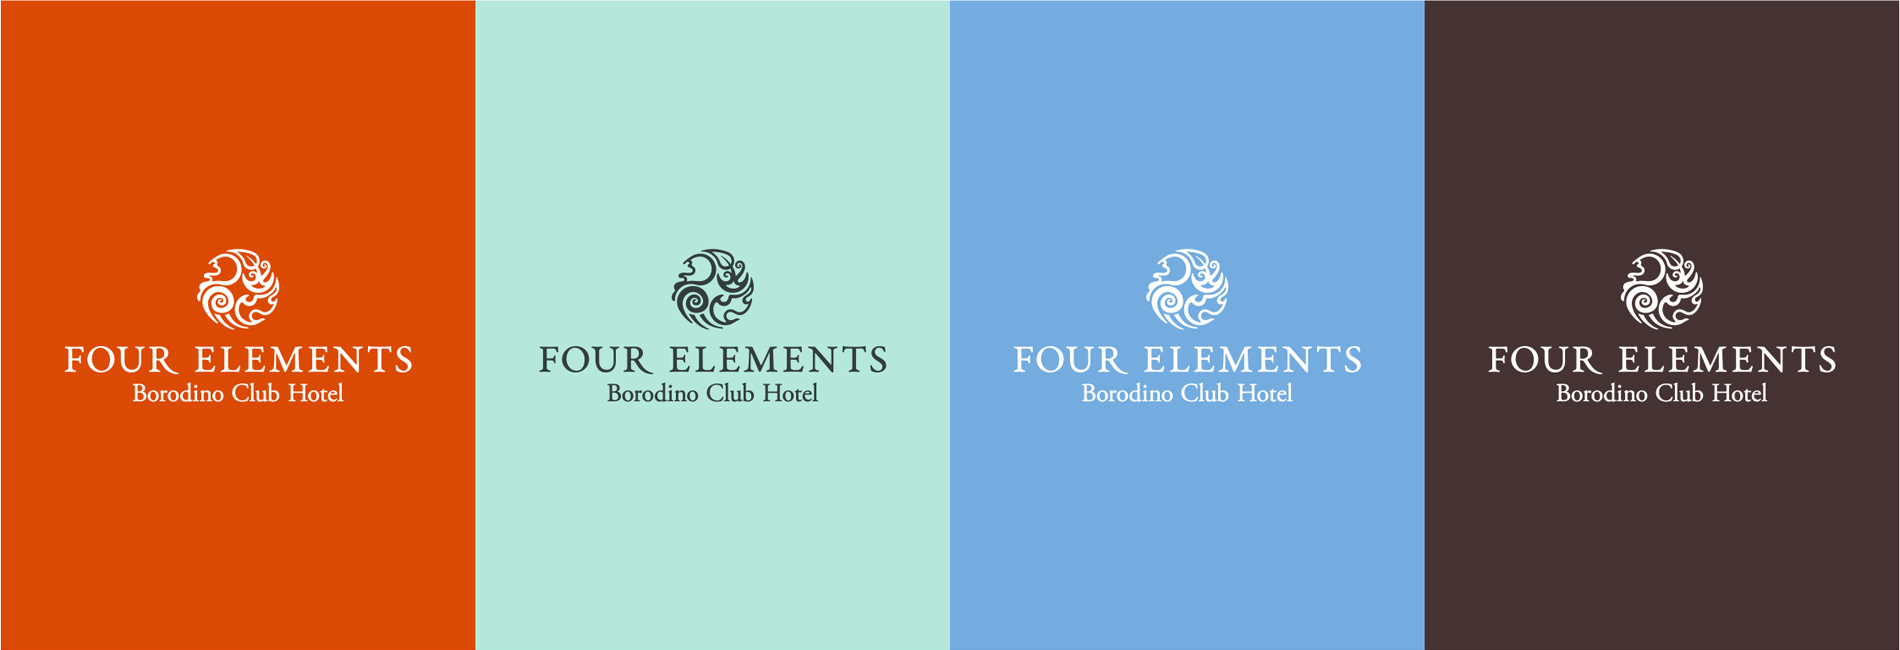 Разработка визуального образа гостиницы 5* Four Elements Borodino Club Hotel